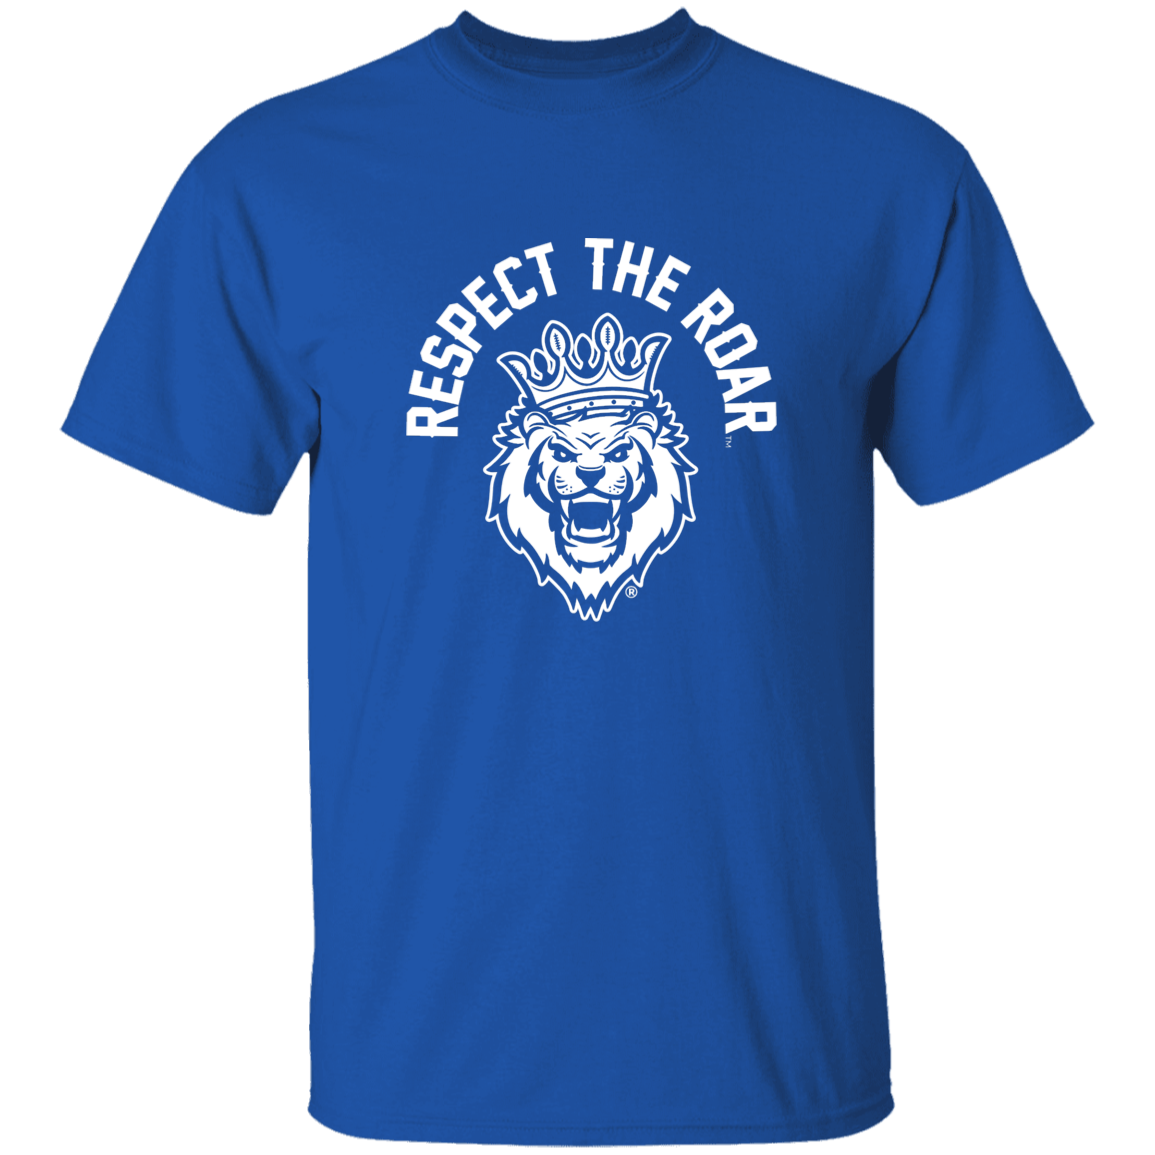 Respect The Roar® Men's T-Shirt